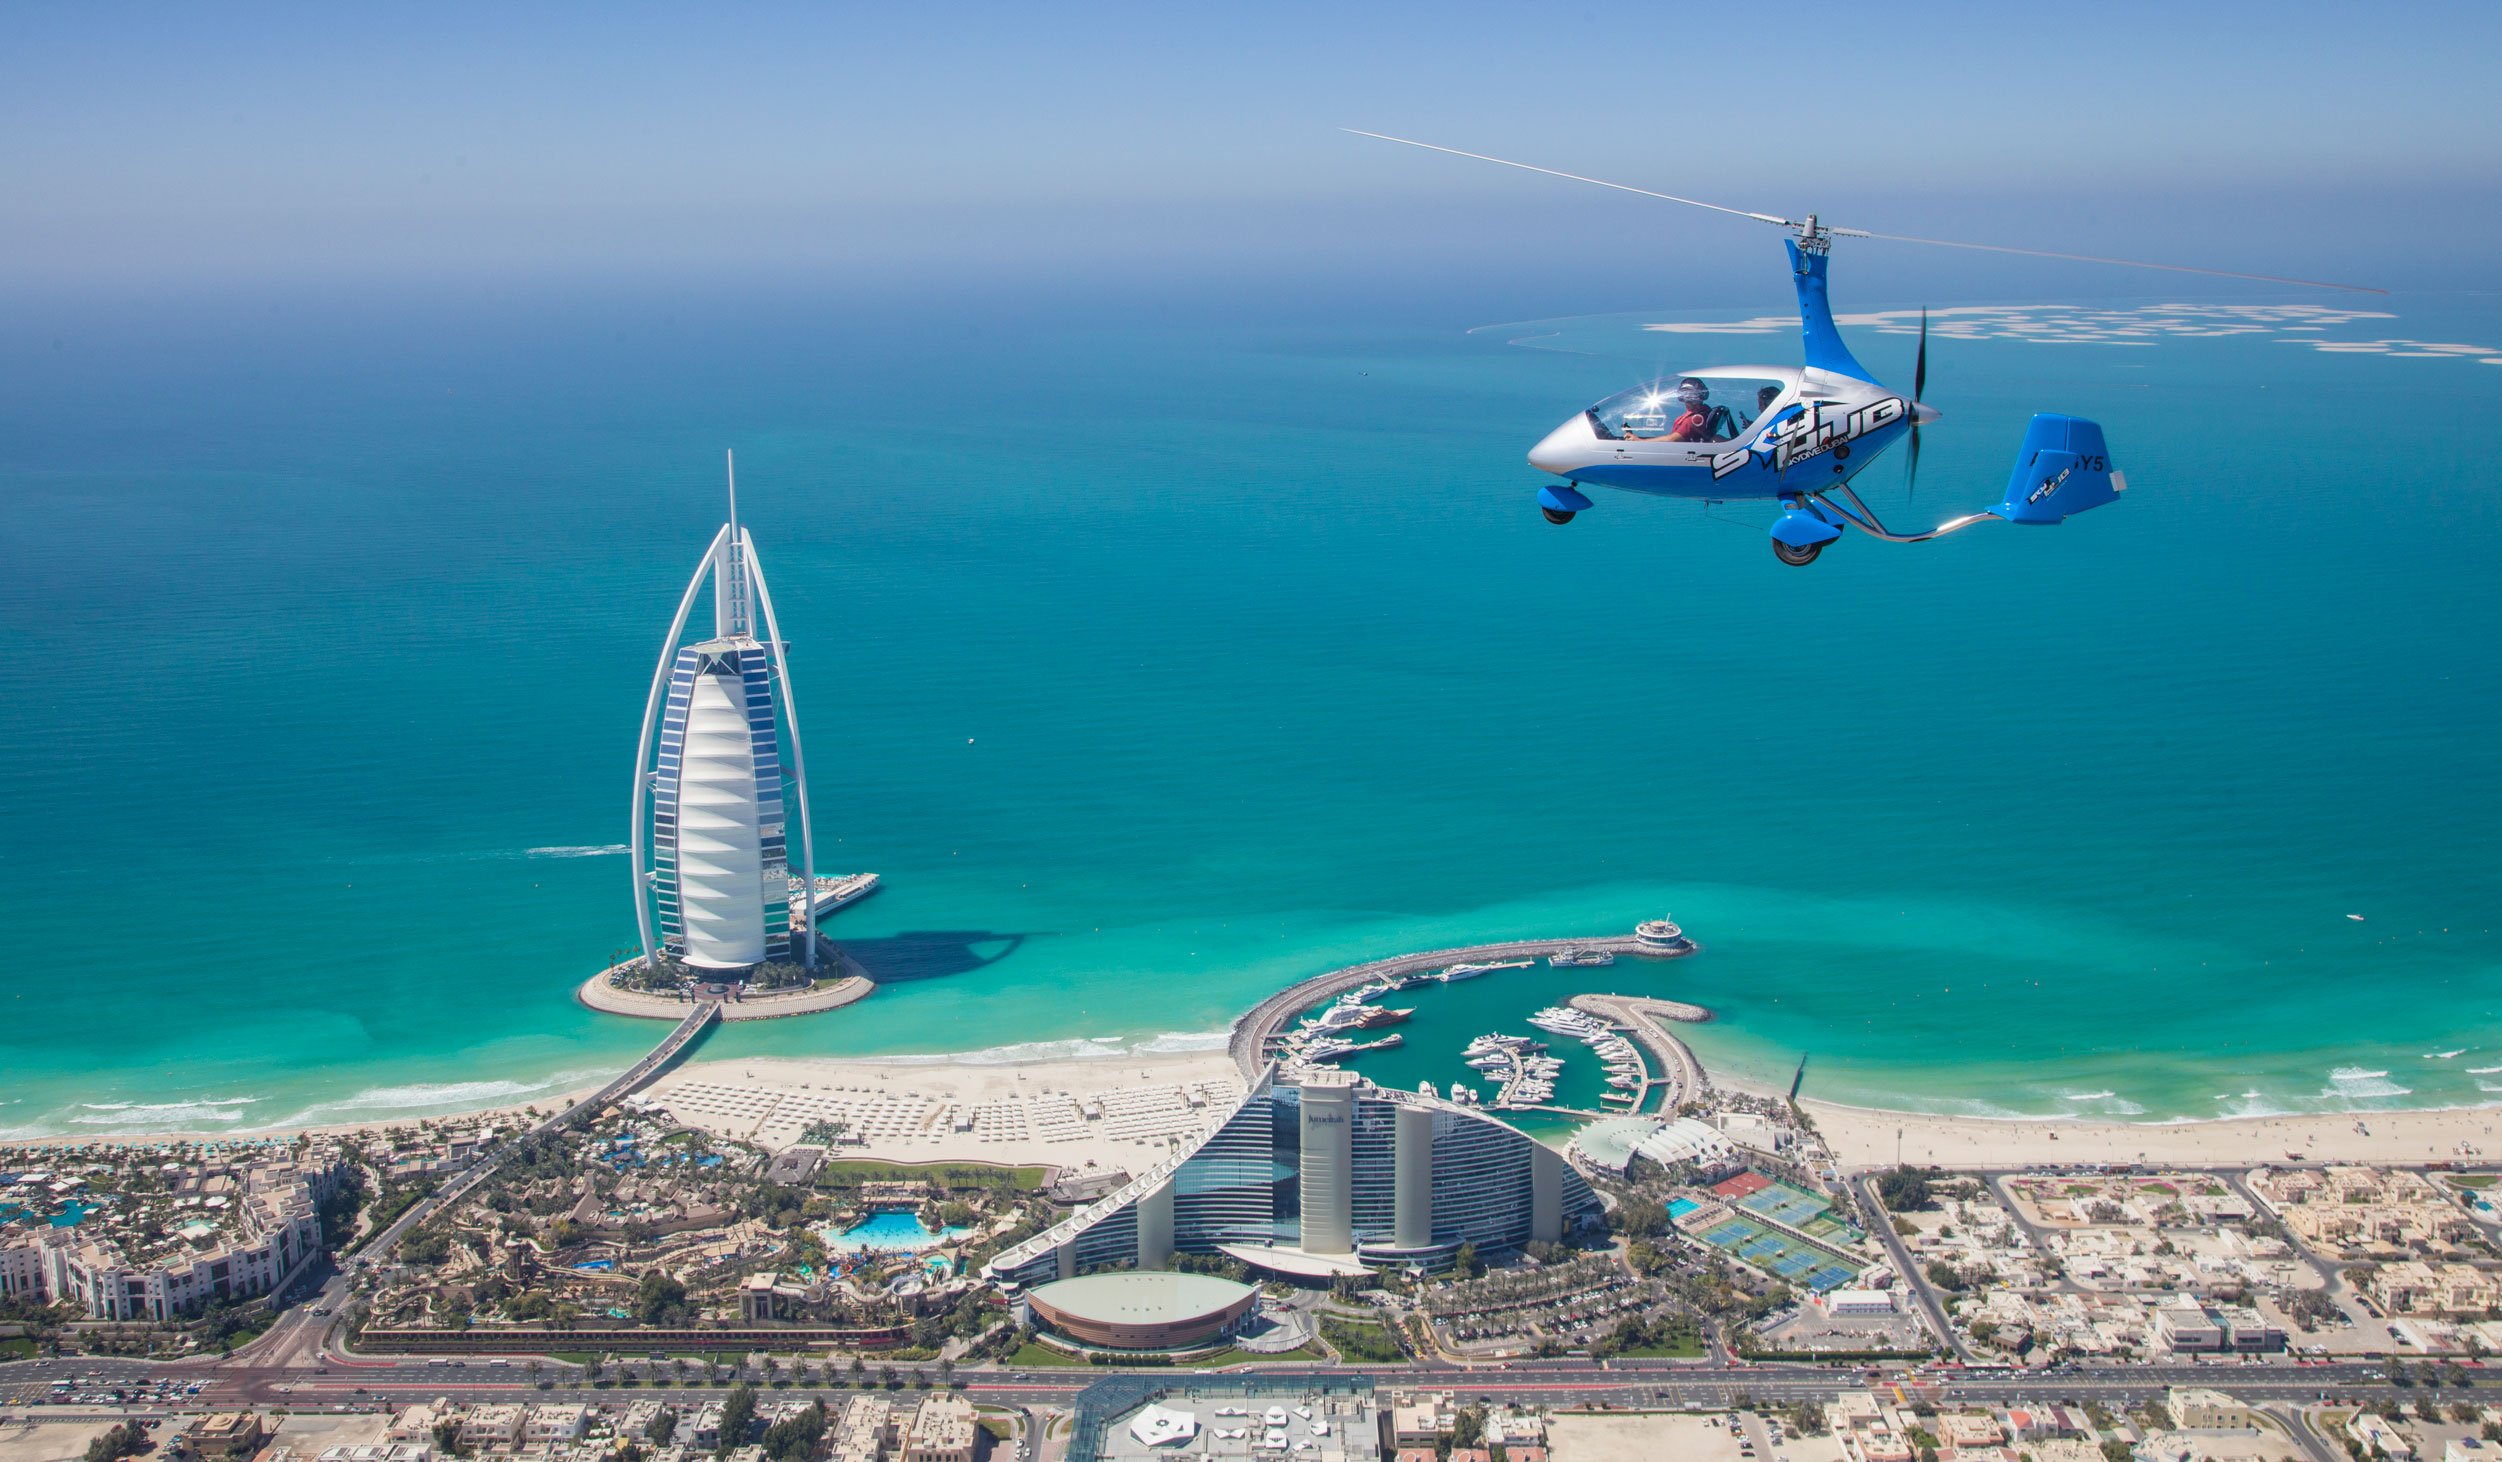 Авиарейсы в дубай. Полет на гирокоптере в Дубае. Дубай с высоты птичьего полета. Emirates над Дубаем. Дубай с пчичего полёта.